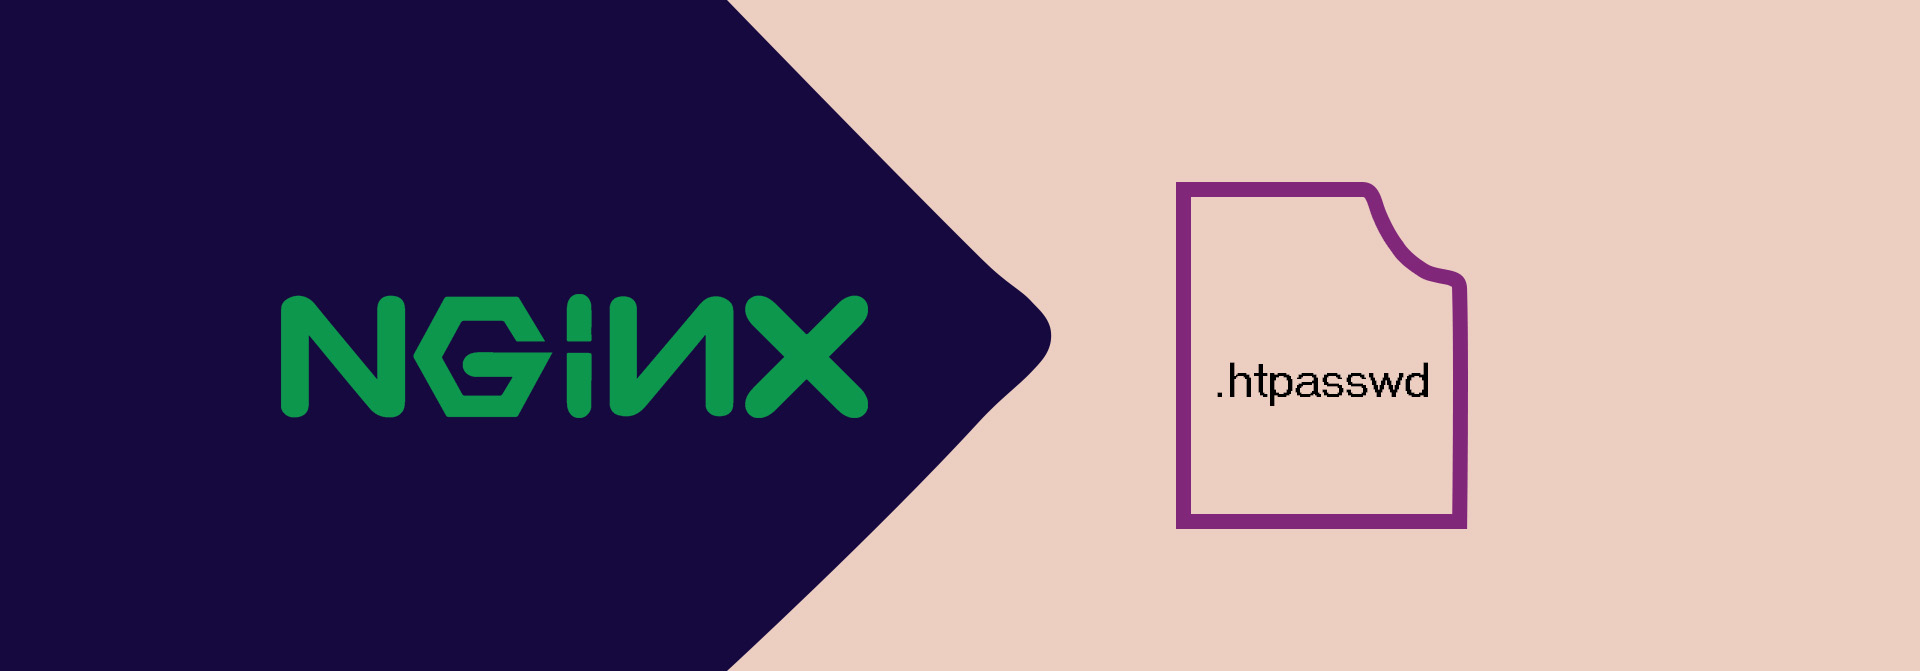 Nginx Basic HTTP authentication